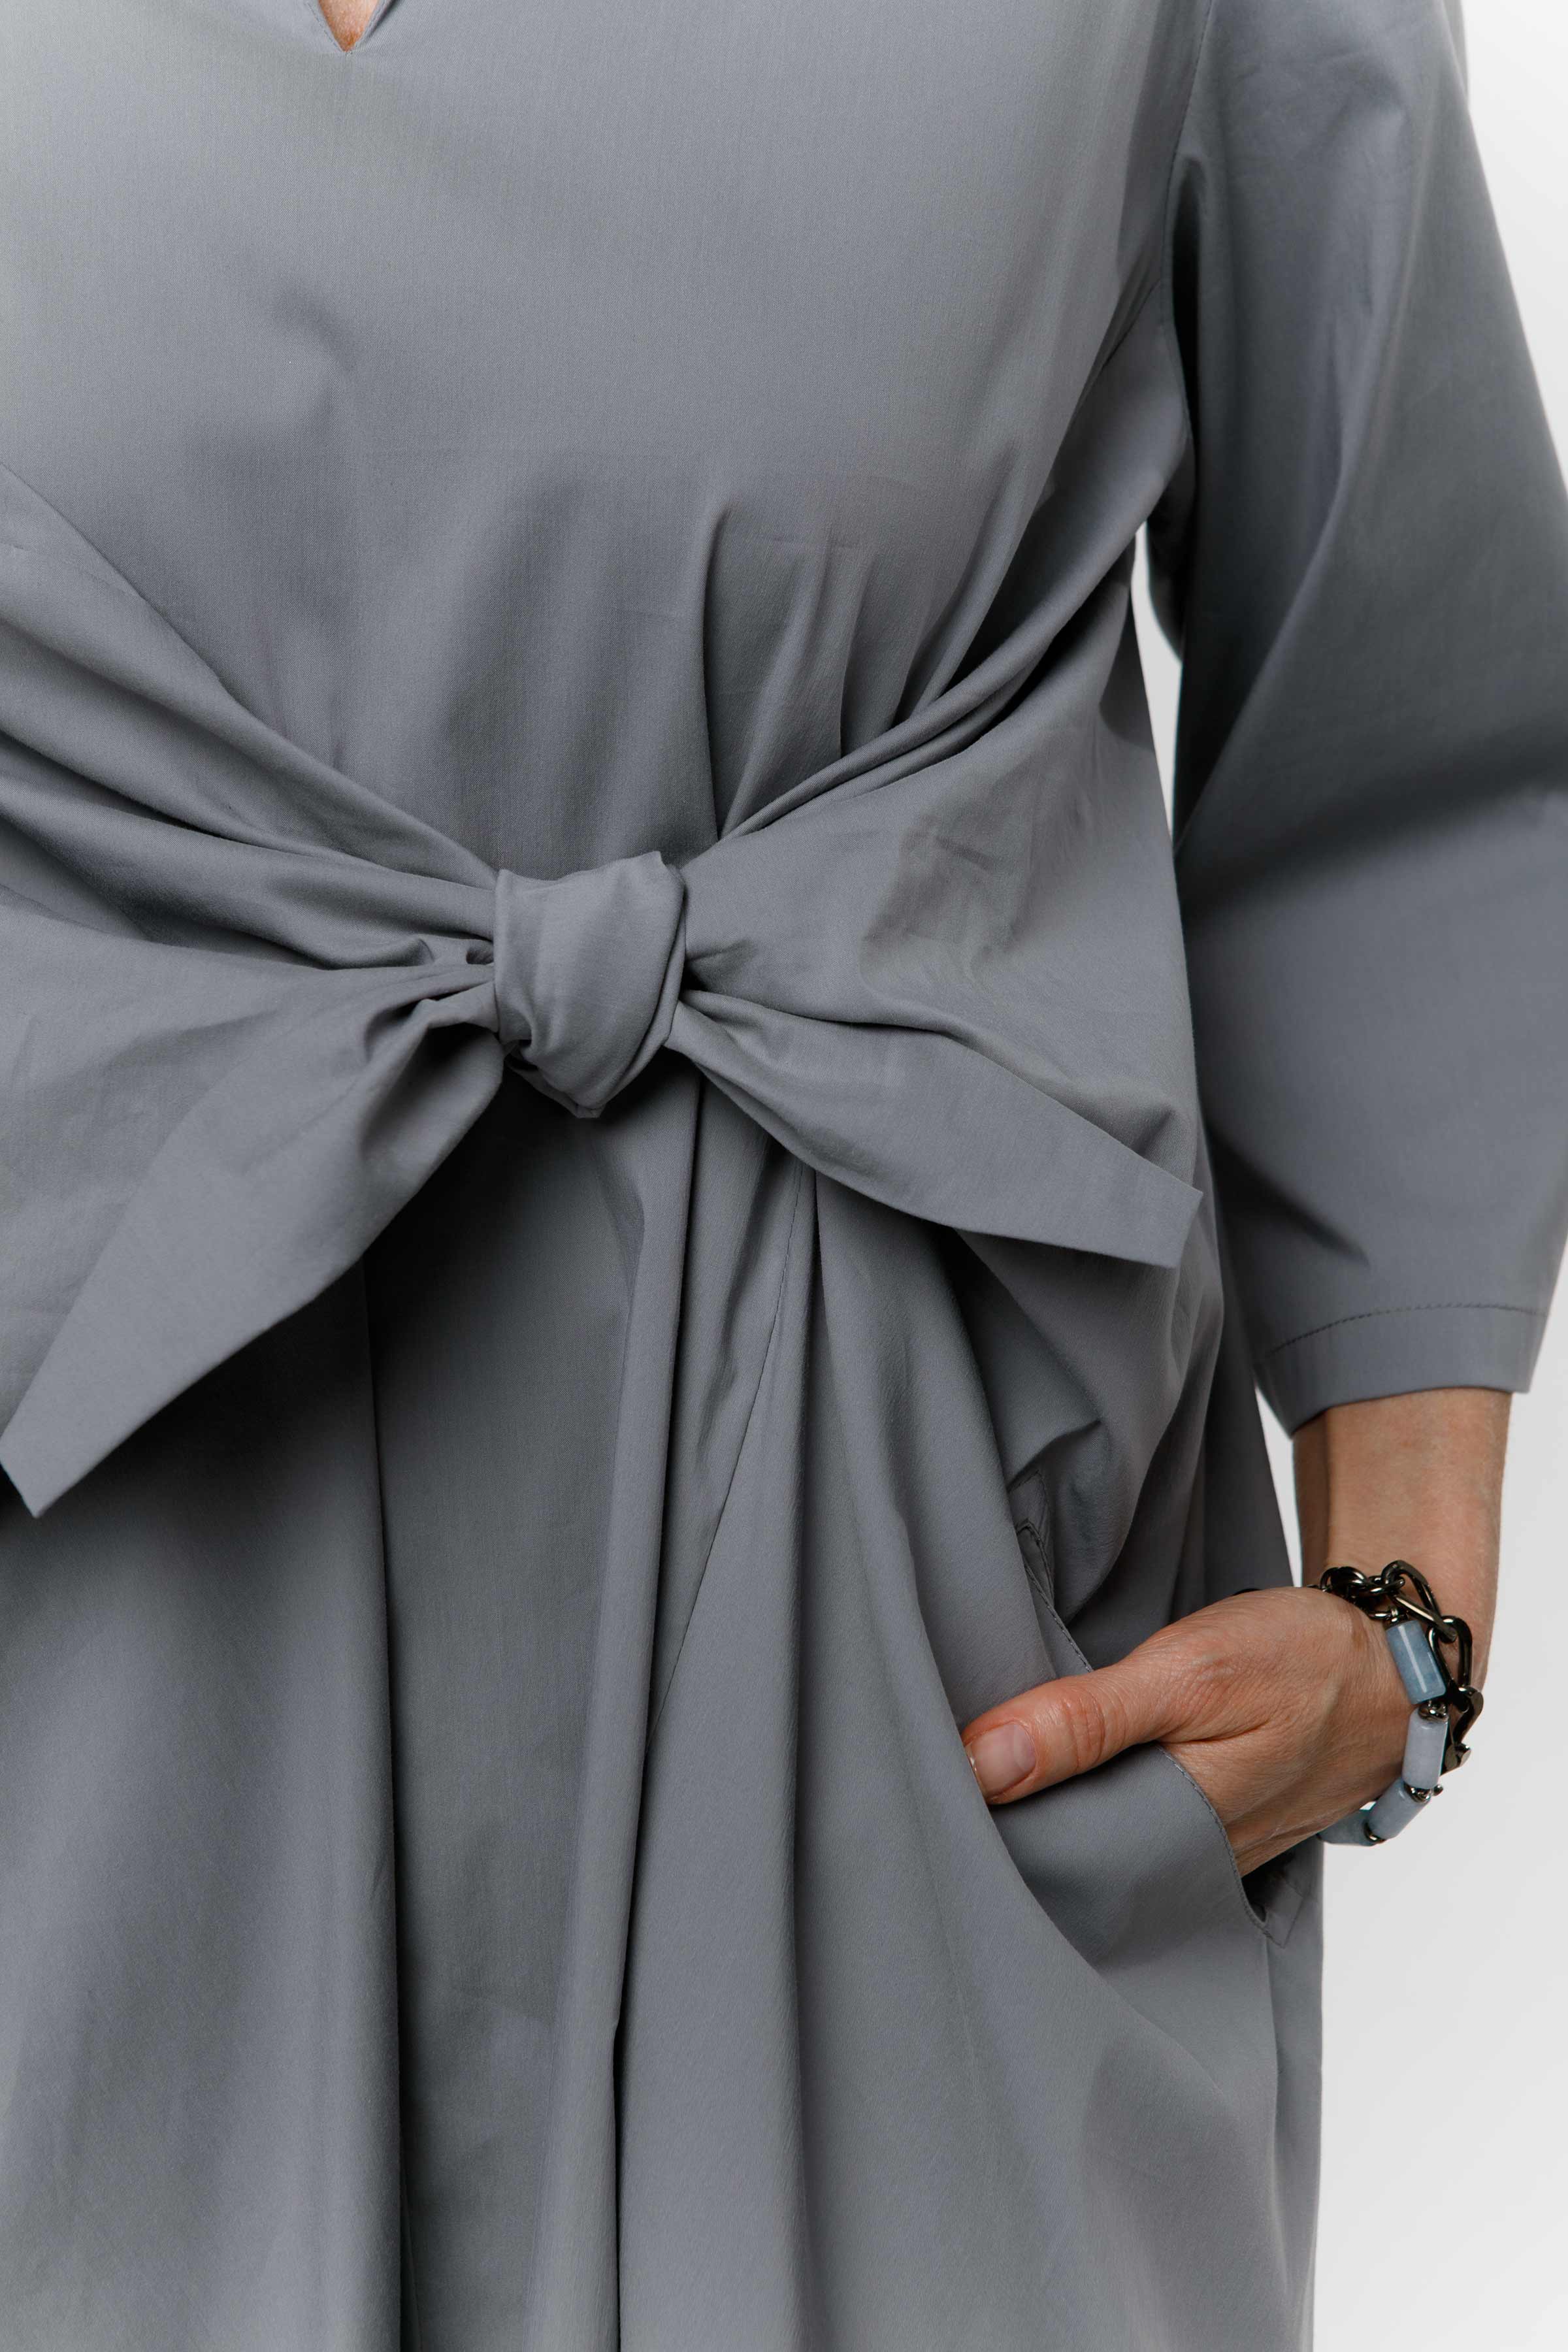 Платье с узлом, хлопок 10 Серый (grise) от Lesel (Лесель)! Заказывайте по ✆ 8 (800) 777 02 37